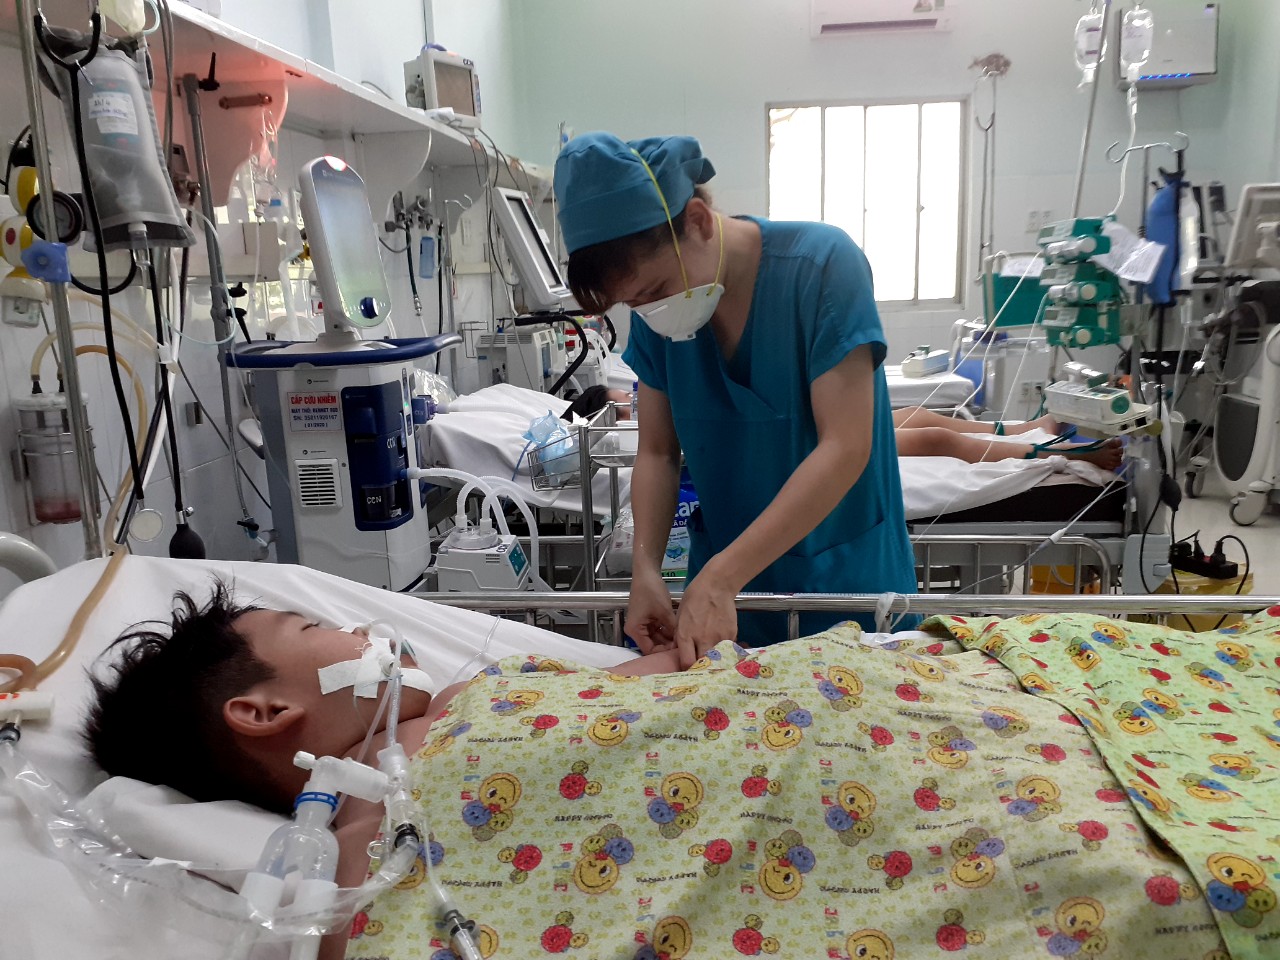 TP Hồ Chí Minh vượt mốc 10.000 ca mắc sốt xuất huyết, nhiều trường hợp nhập viện đã suy đa tạng - Ảnh 2.